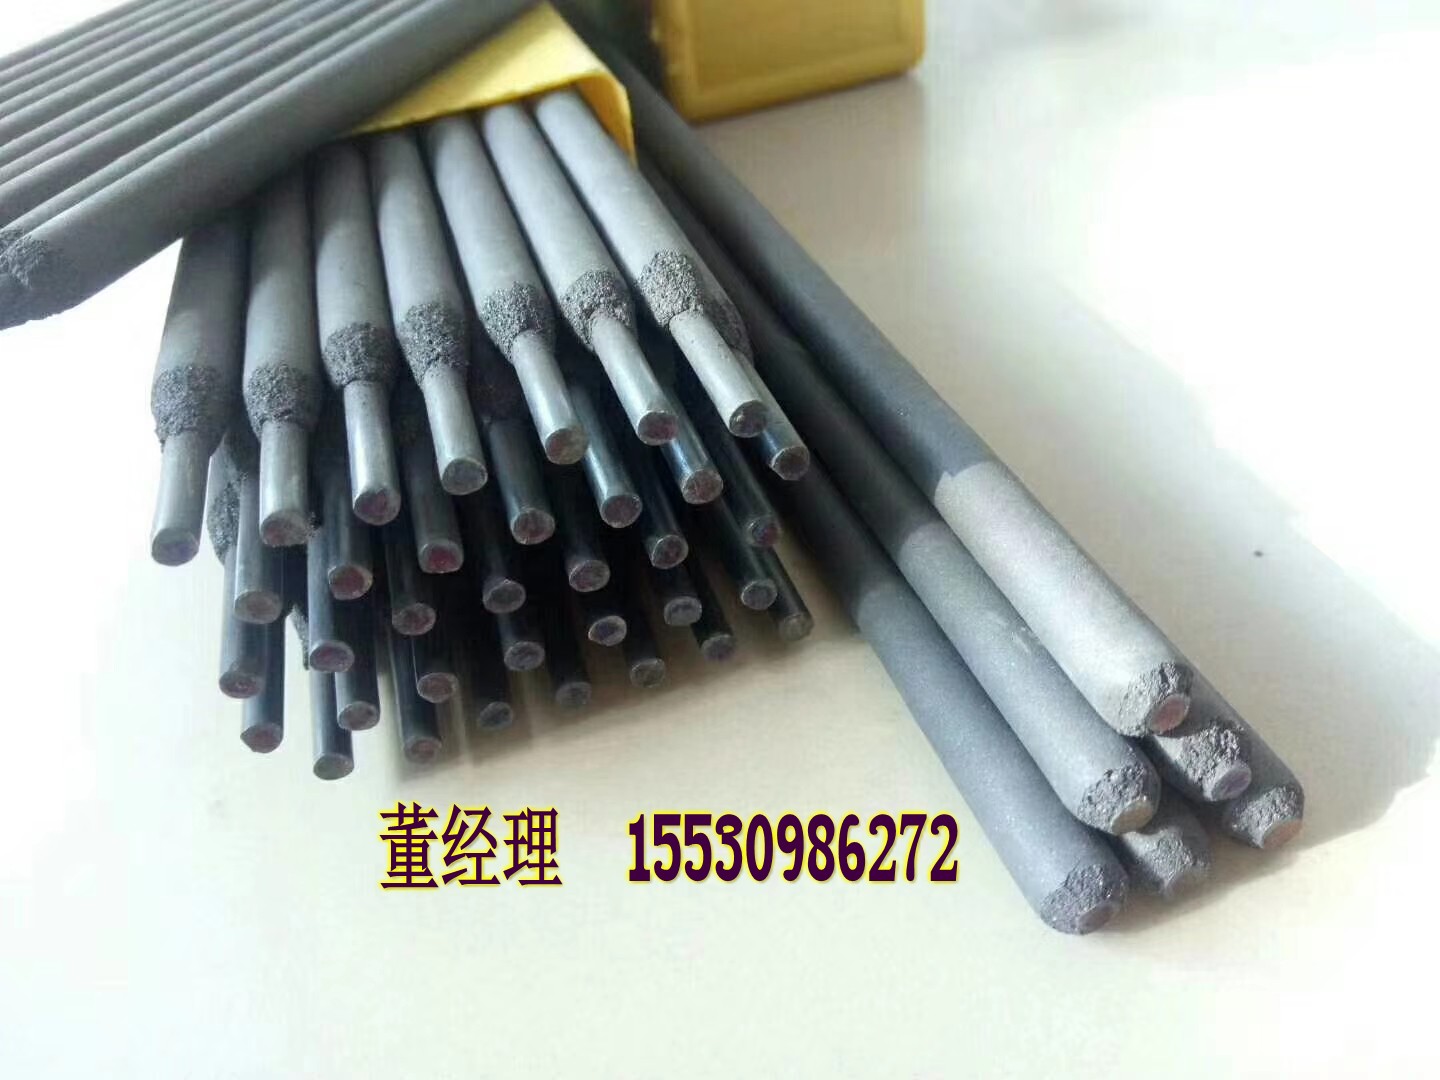 750M高合金堆焊耐磨焊丝 高硬度焊丝 报价